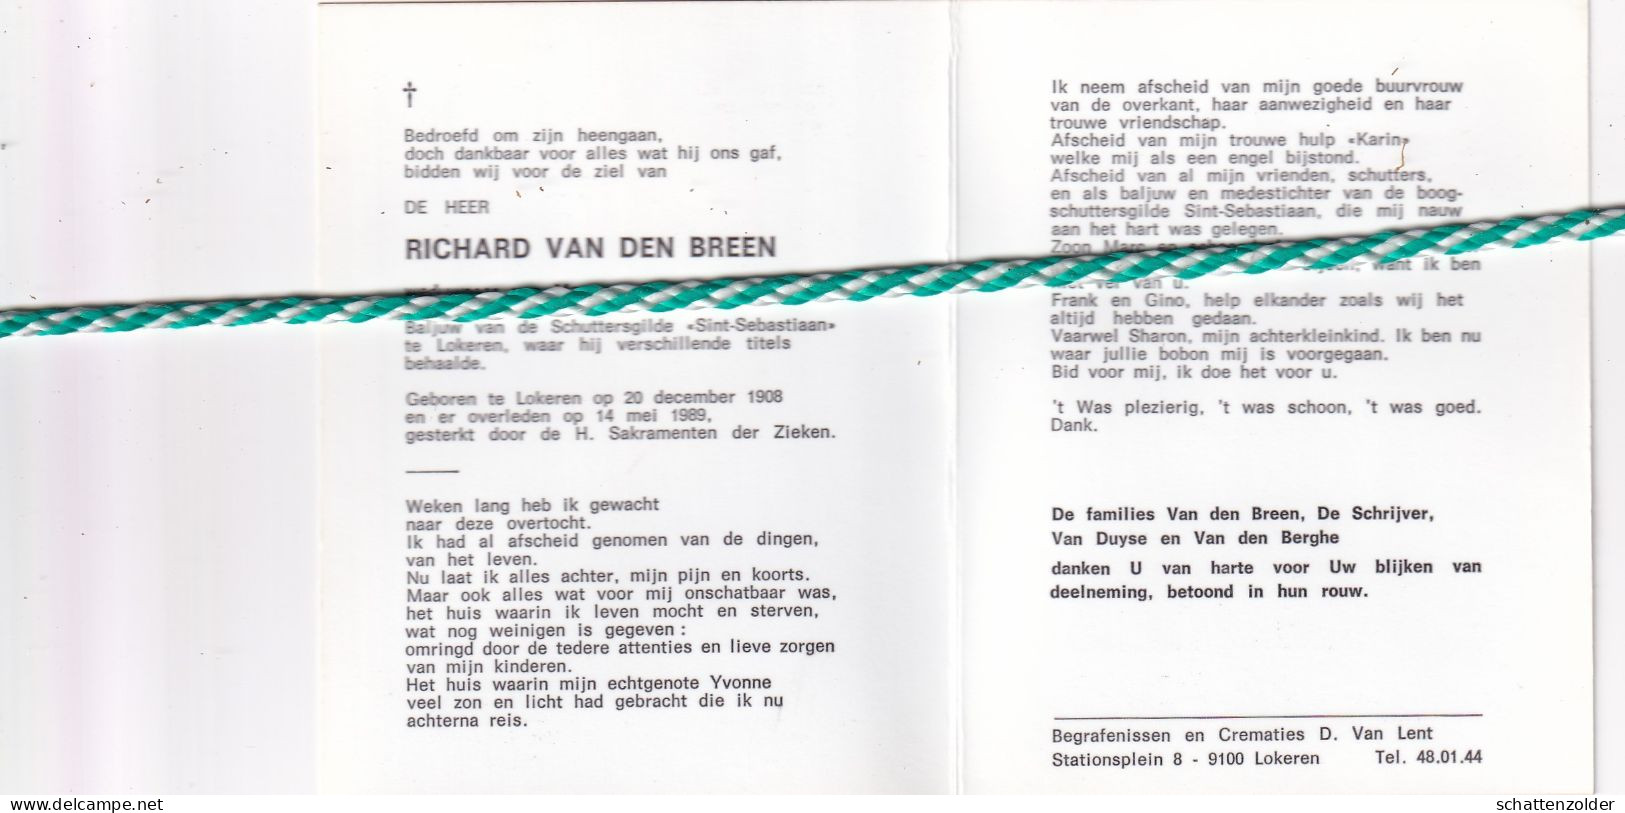 Richard Van Den Breen-De Schrijver, Lokeren 1908, 1989. Foto Baljuw Schuttersgilde "Sint-Sebastiaan" - Décès